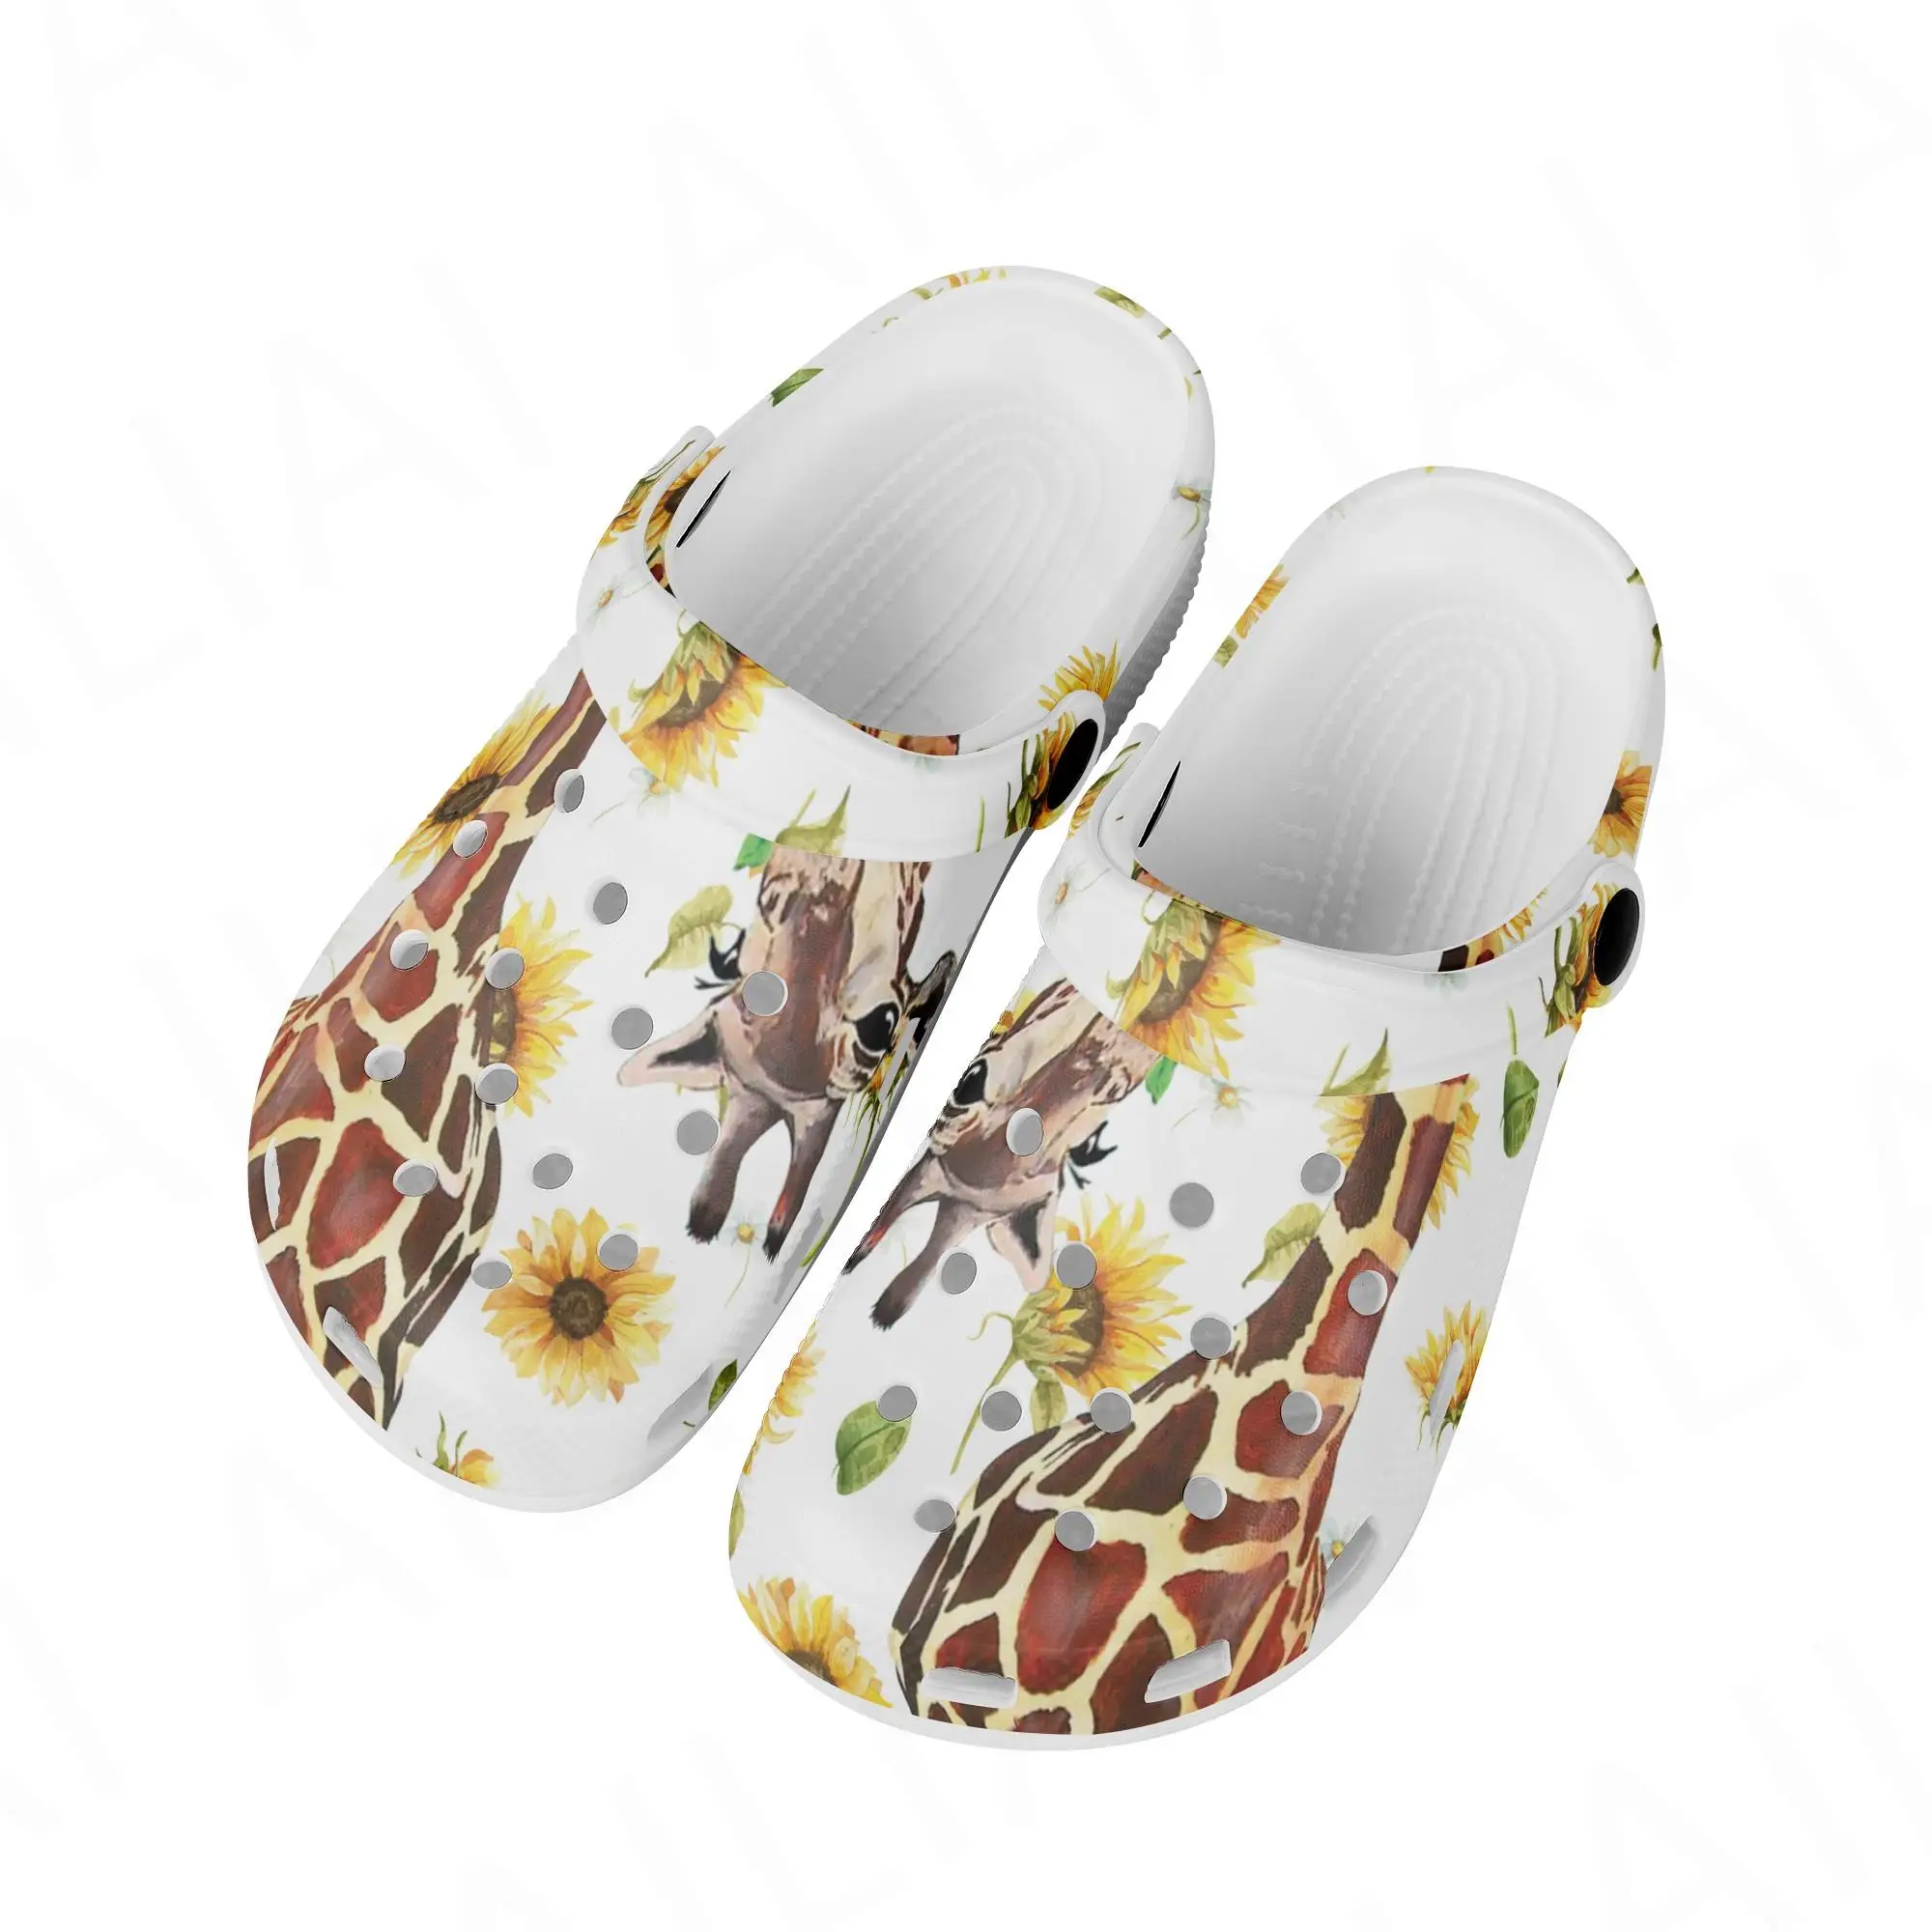 Обувь с отверстиями в виде милого жирафа Женская повседневная пляжная обувь без застежки Легкие Летние сандалии для девочек Chaussure Femme New